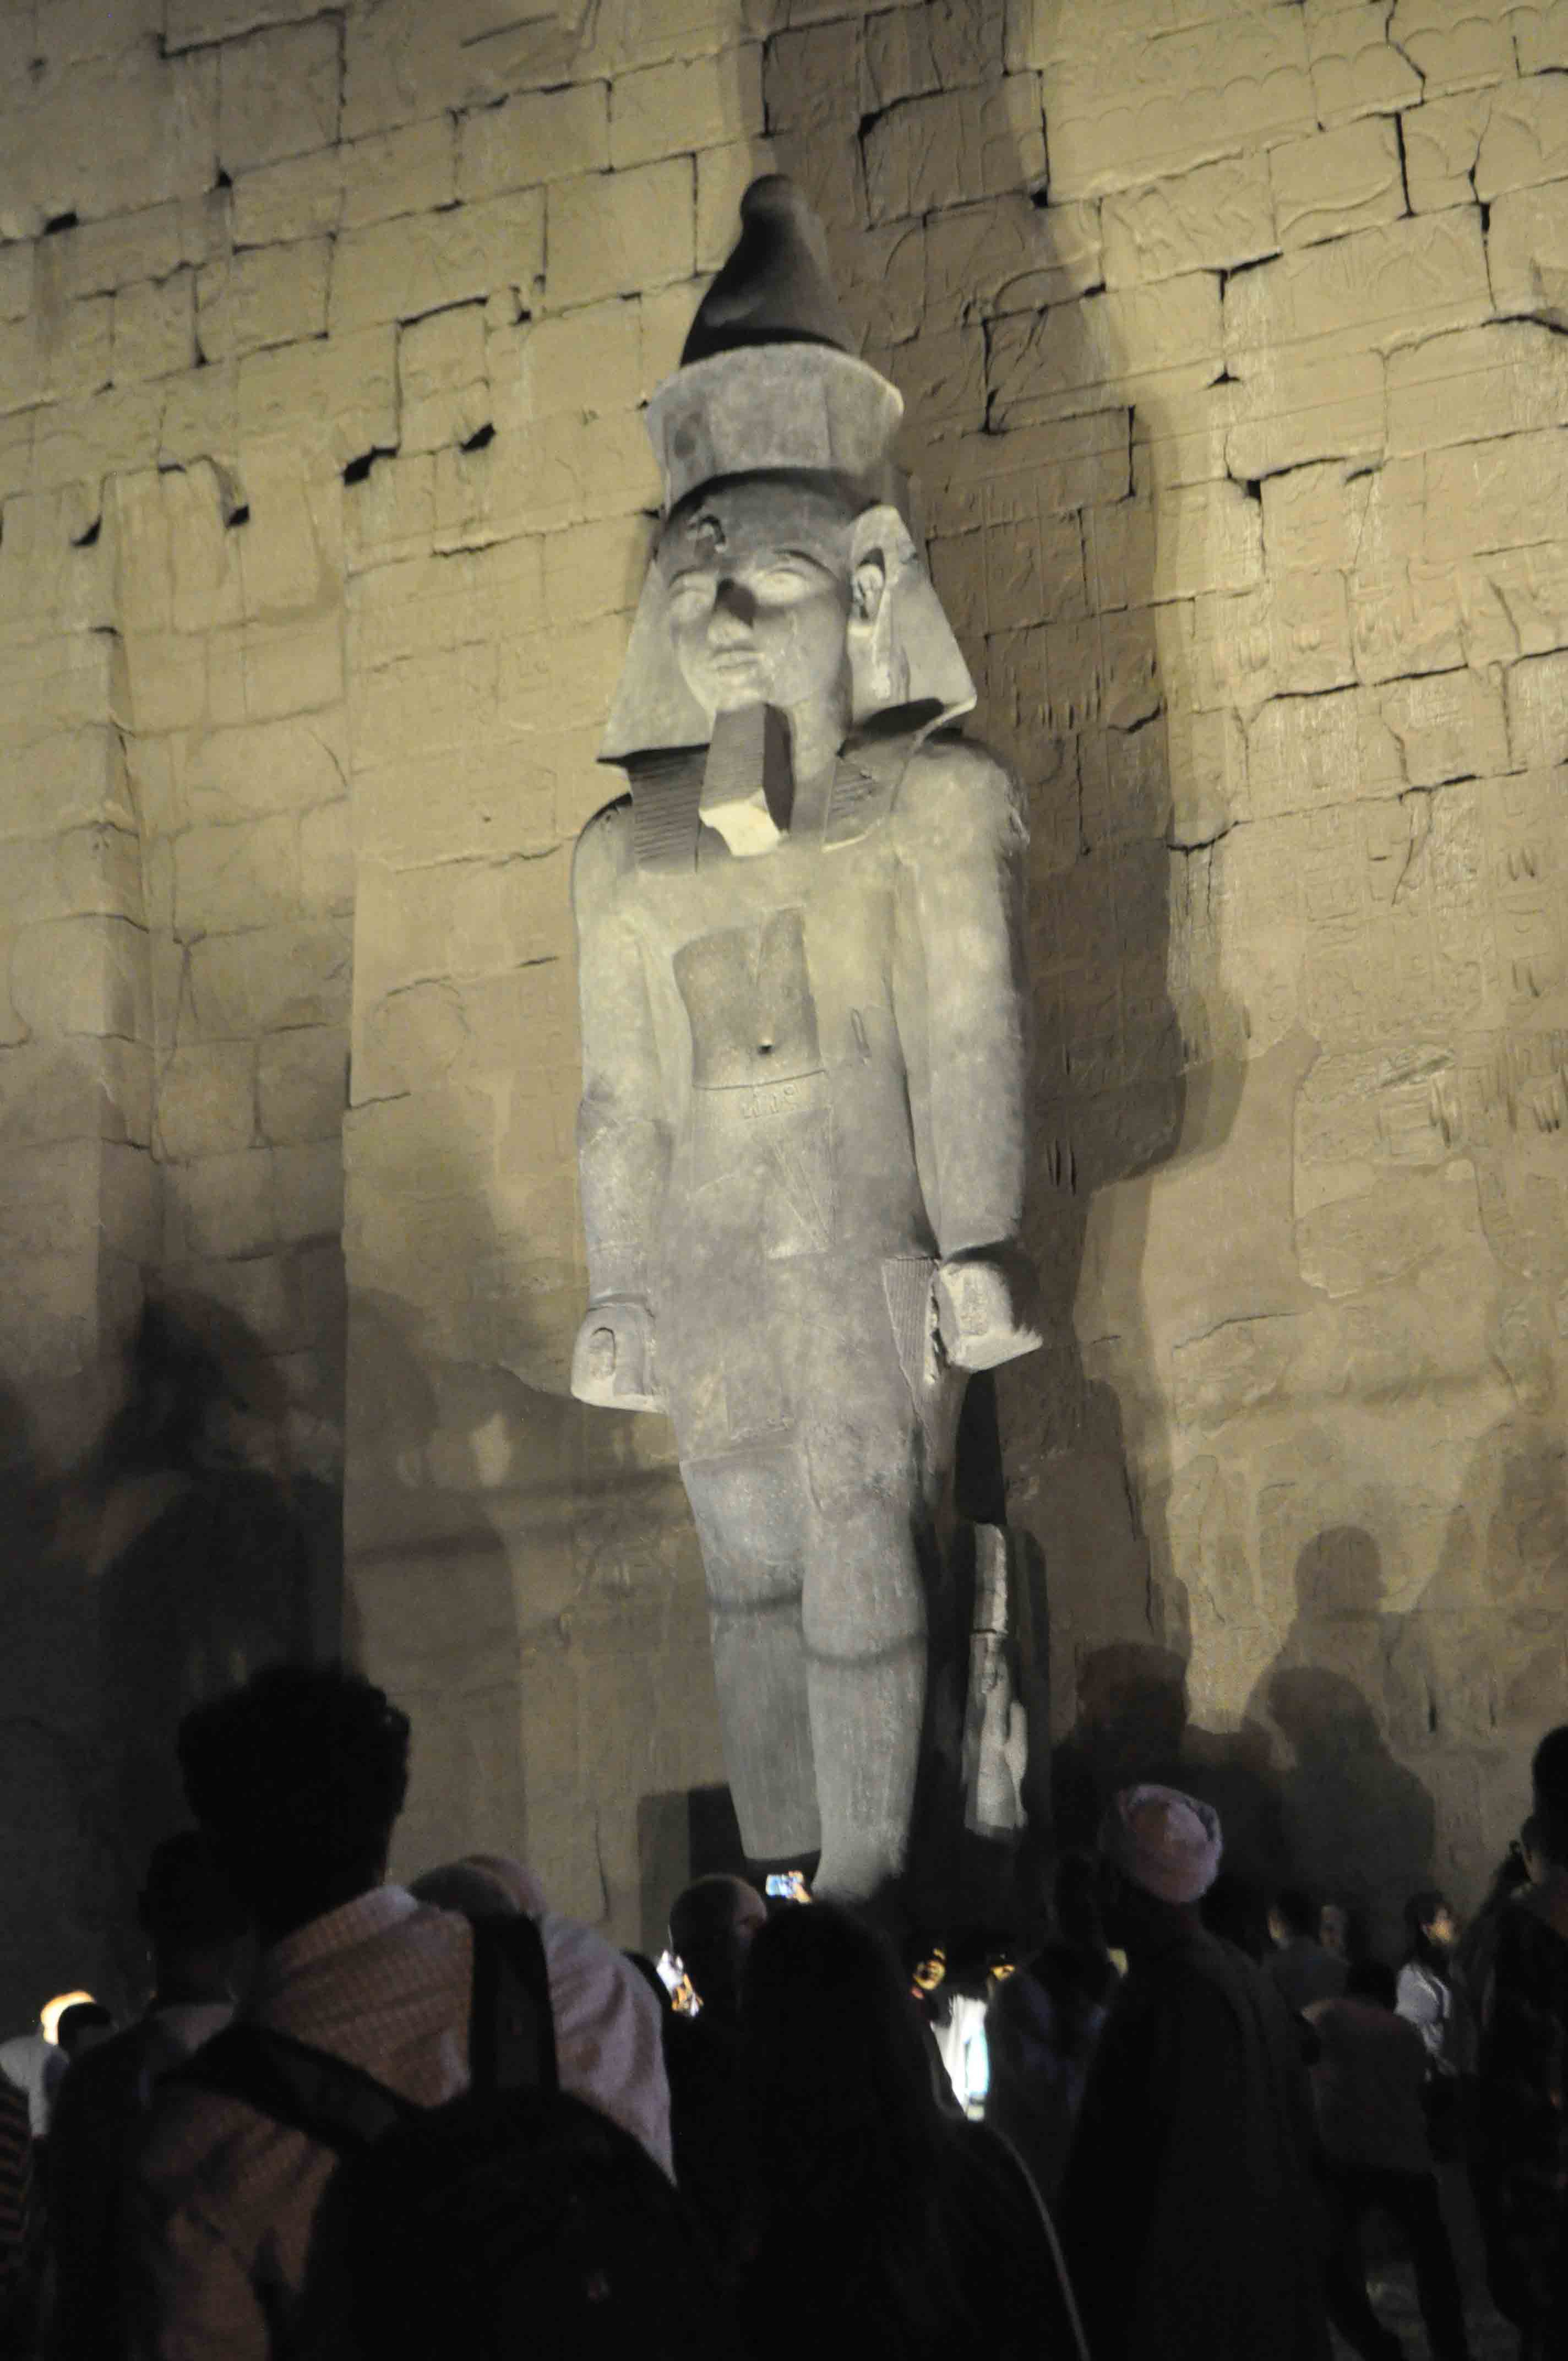  تمثال الملك رمسيس الثانى يعود لموقع بواجهة معبد الأقصر